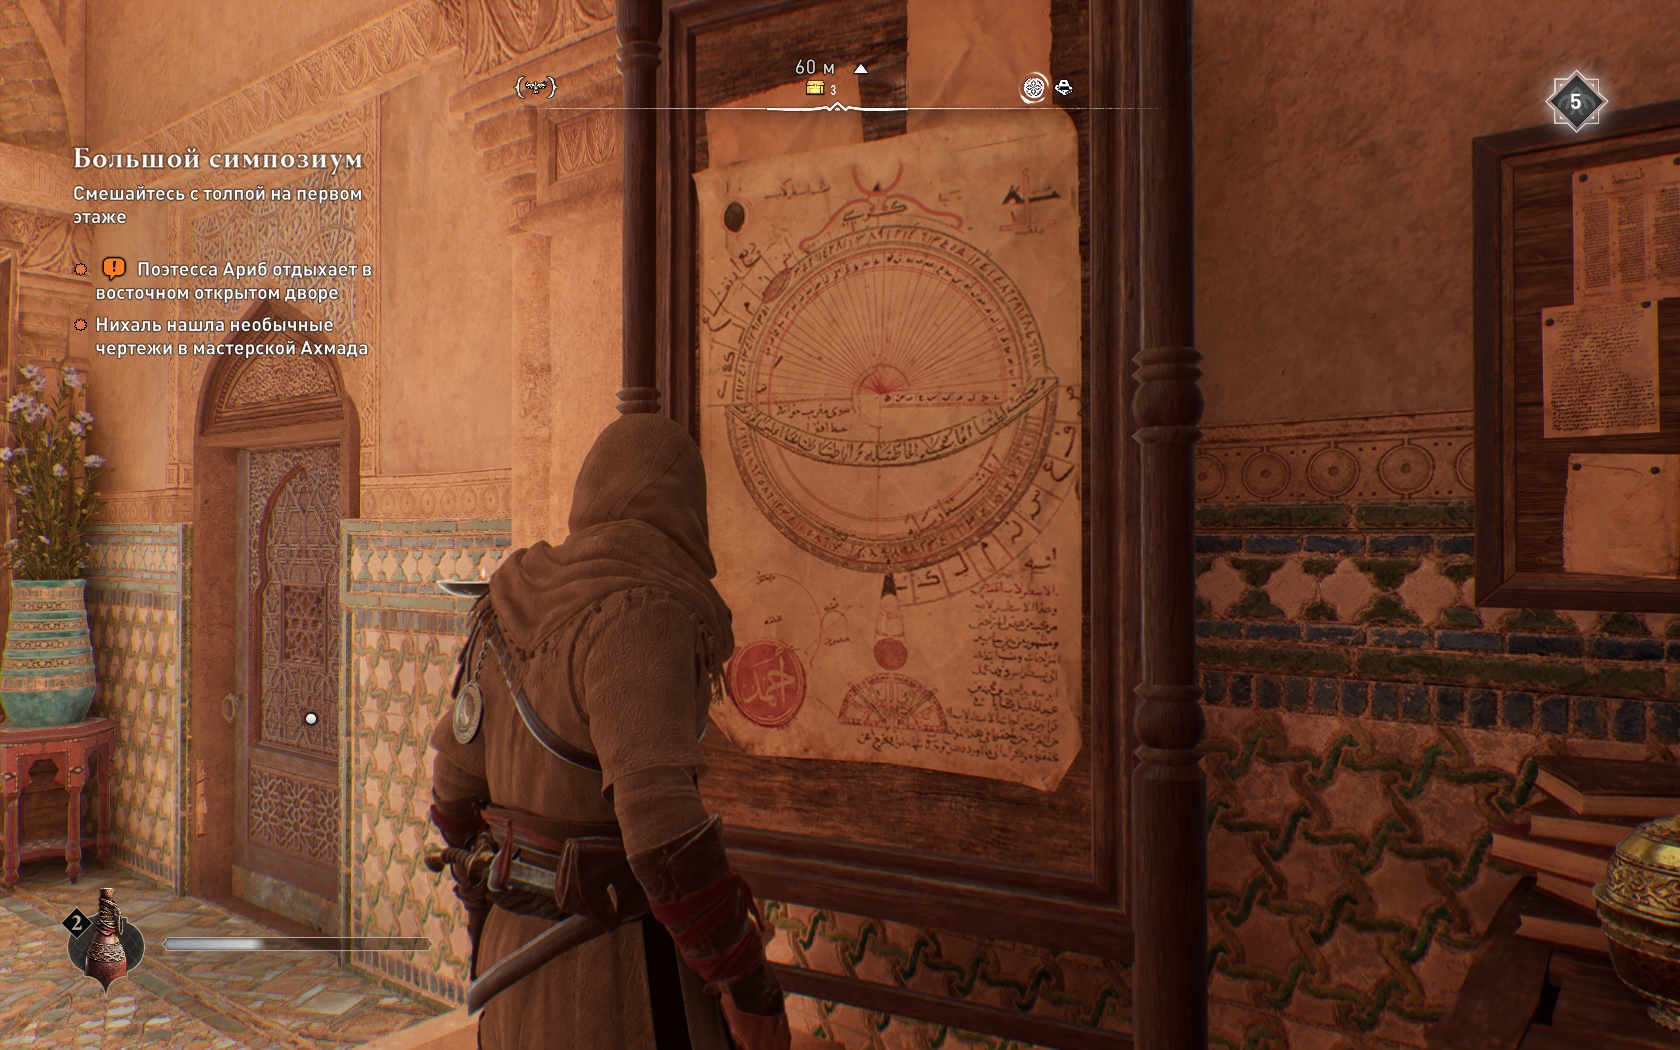 Ассасин мираж таблетка. Наруч химеры Assassins Creed Syndicate где найти. Окрестности Багдада сундуки со снаряжением. Где вход в подвалы в доме мудрости ассасин.